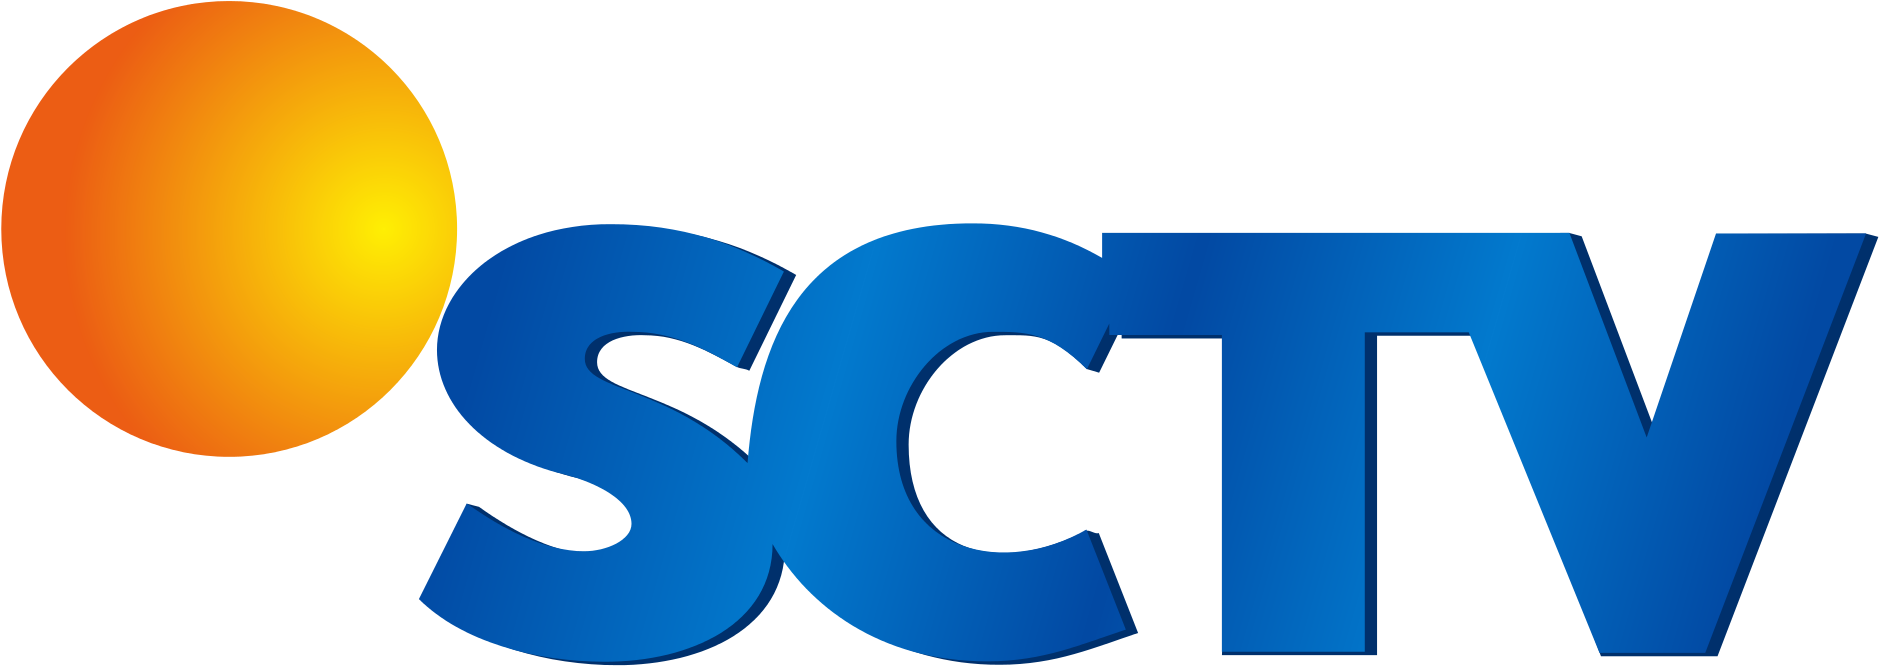 Download Logo Sctv - KibrisPDR